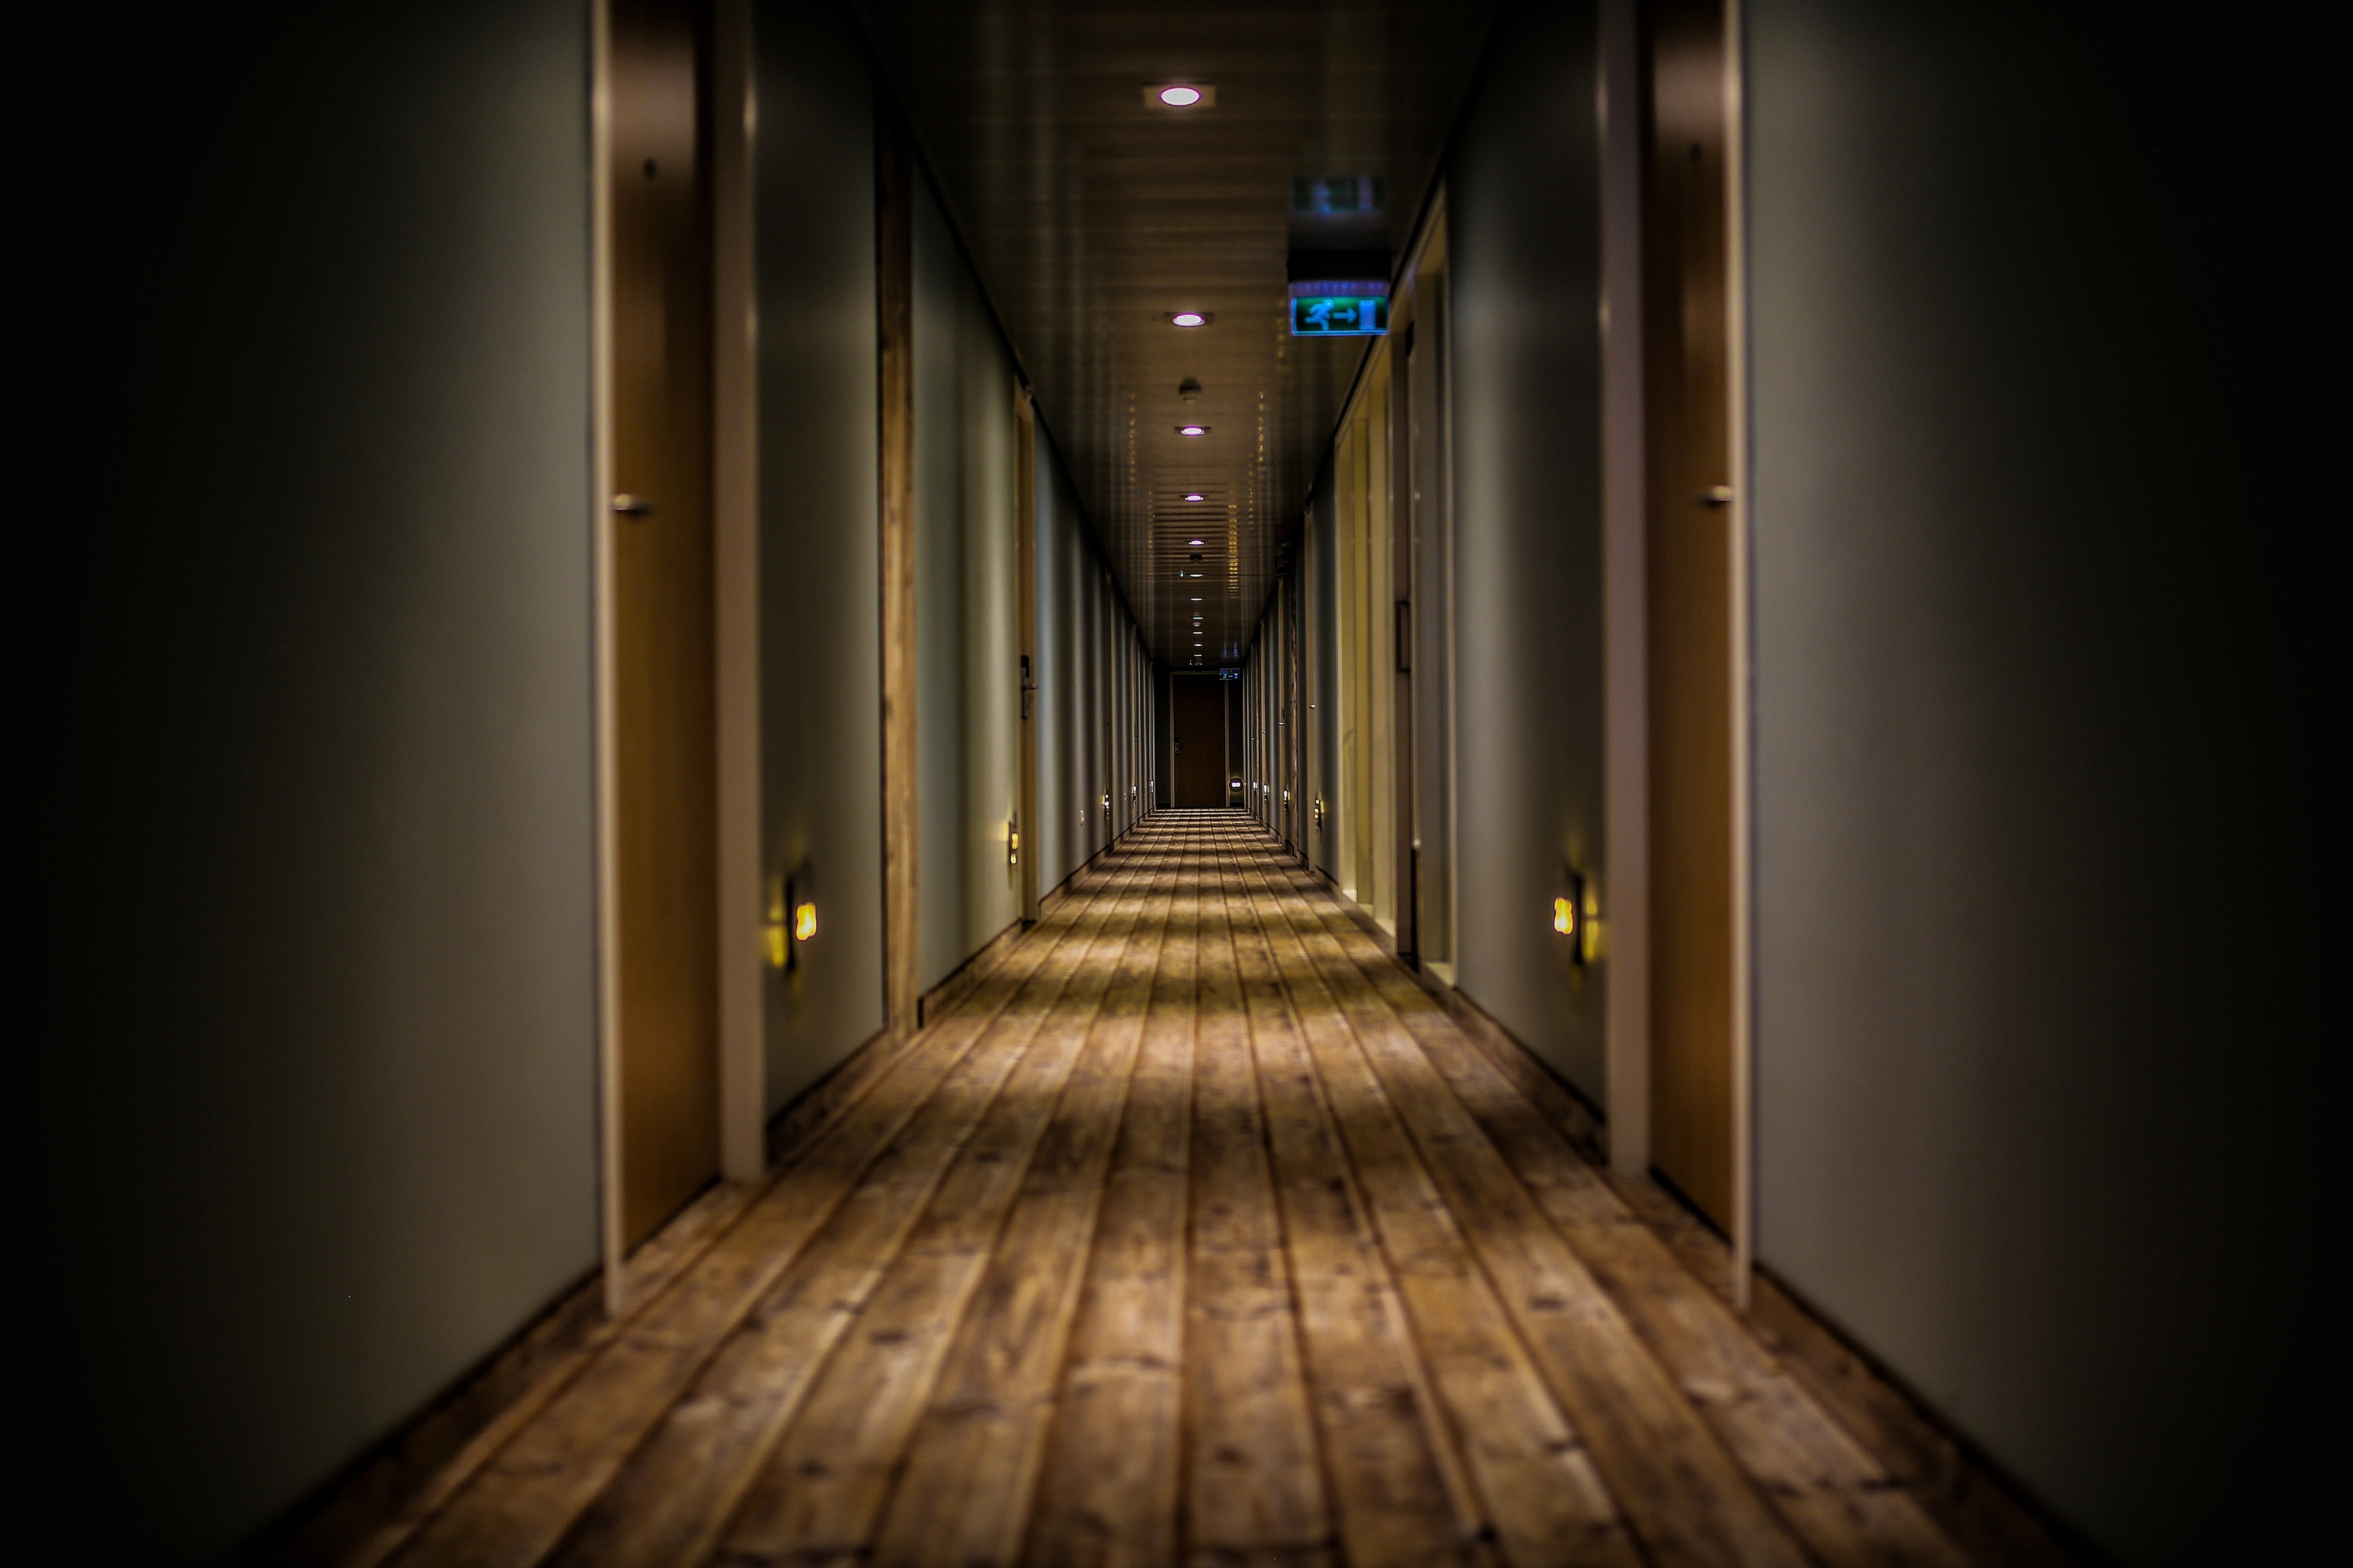 hotel-hallway-wood-floor